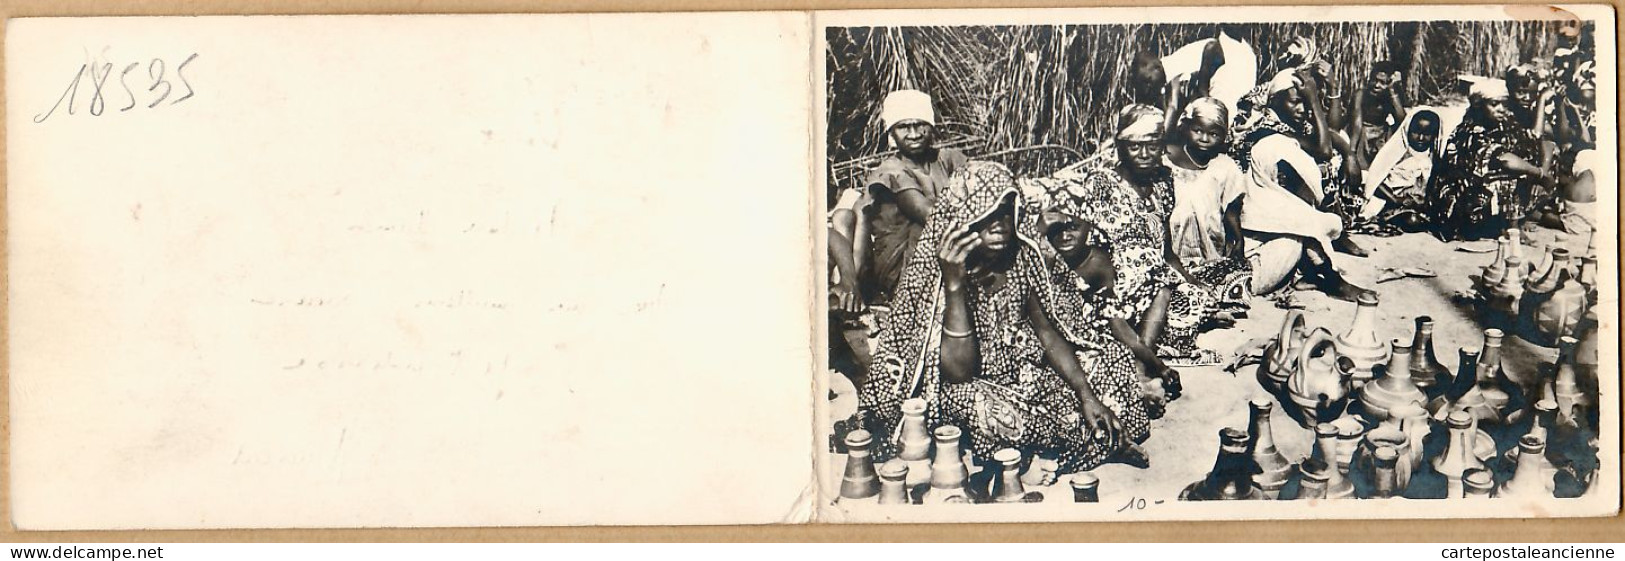 08026 ● Carte-Double Vendeuses Poterie Africaine MEILLEURS VOEUX Service Information Documentation PARIS 1960s CPDOM - Unclassified